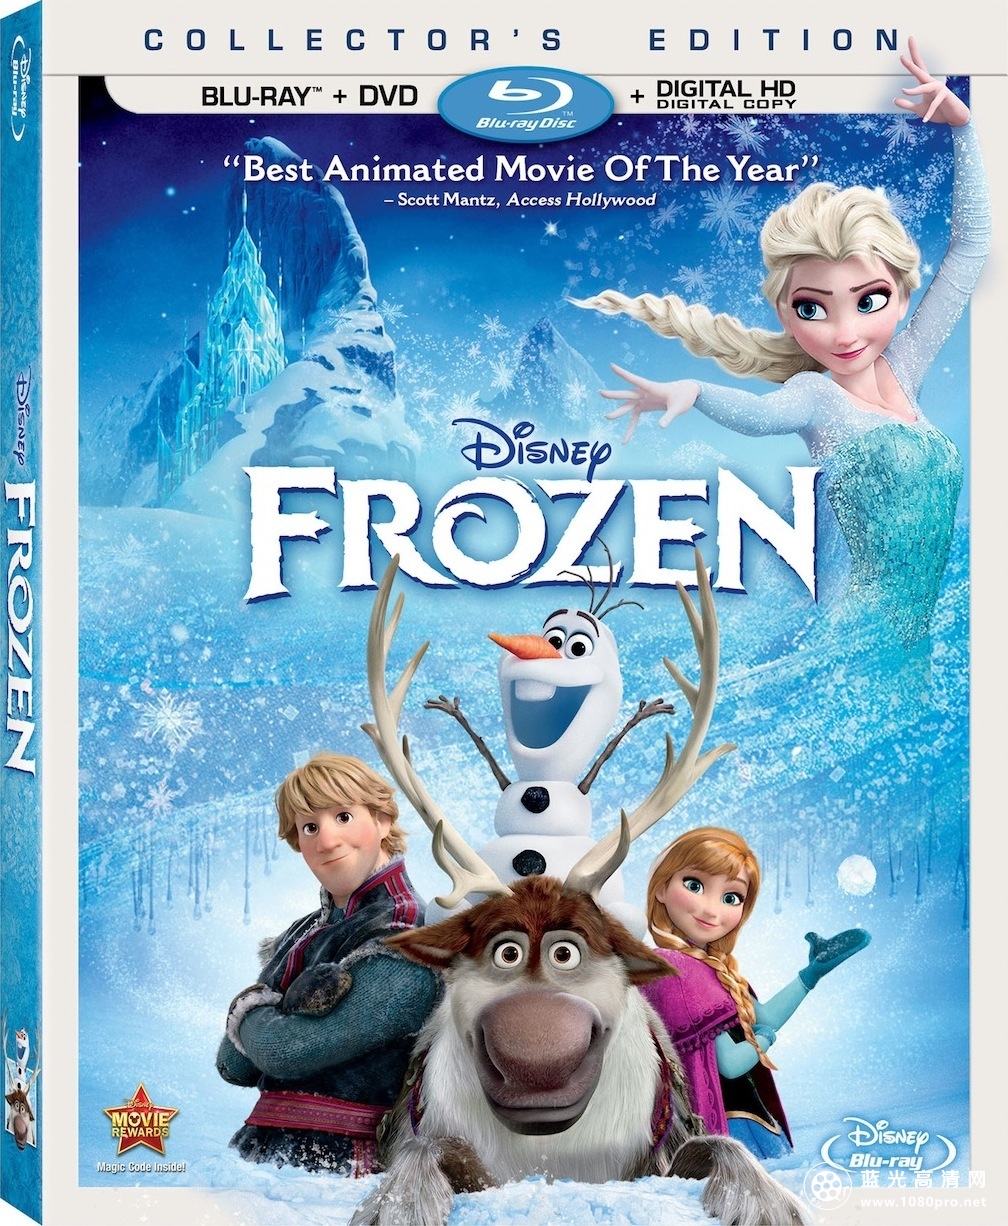 冰雪奇缘[港版3D原盘 国粤英中英字]Frozen.2013.3D.Blu-ray.HK.1080p.AVC.DTS-HD.MA.7.1-TTG 39.21G ...